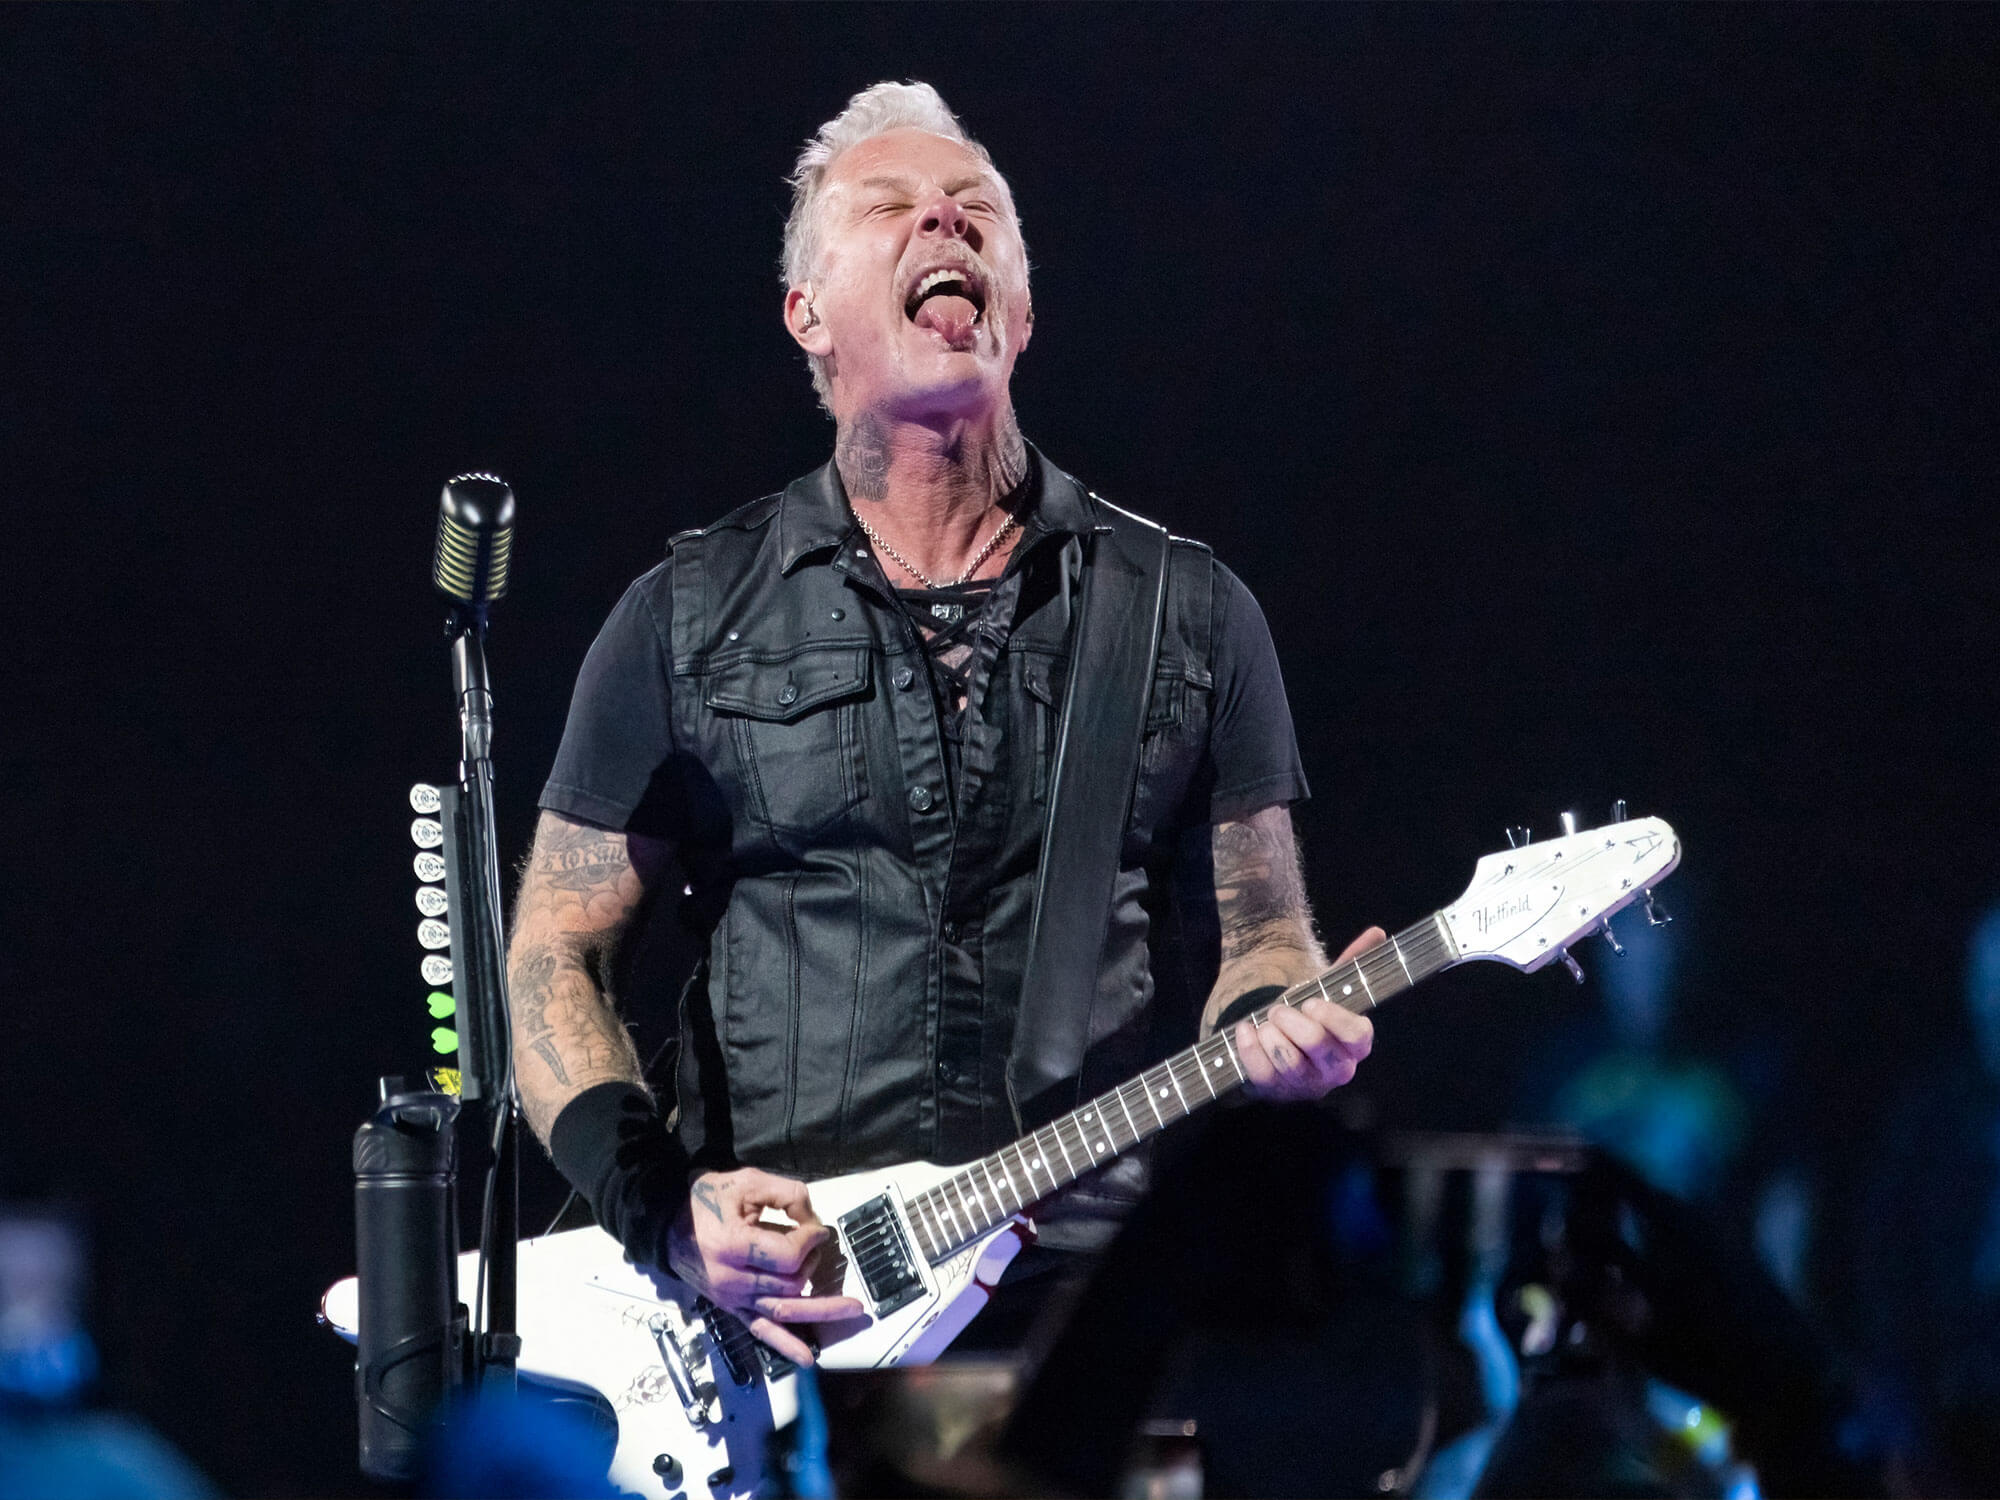 Metallica's James Hetfield performing live